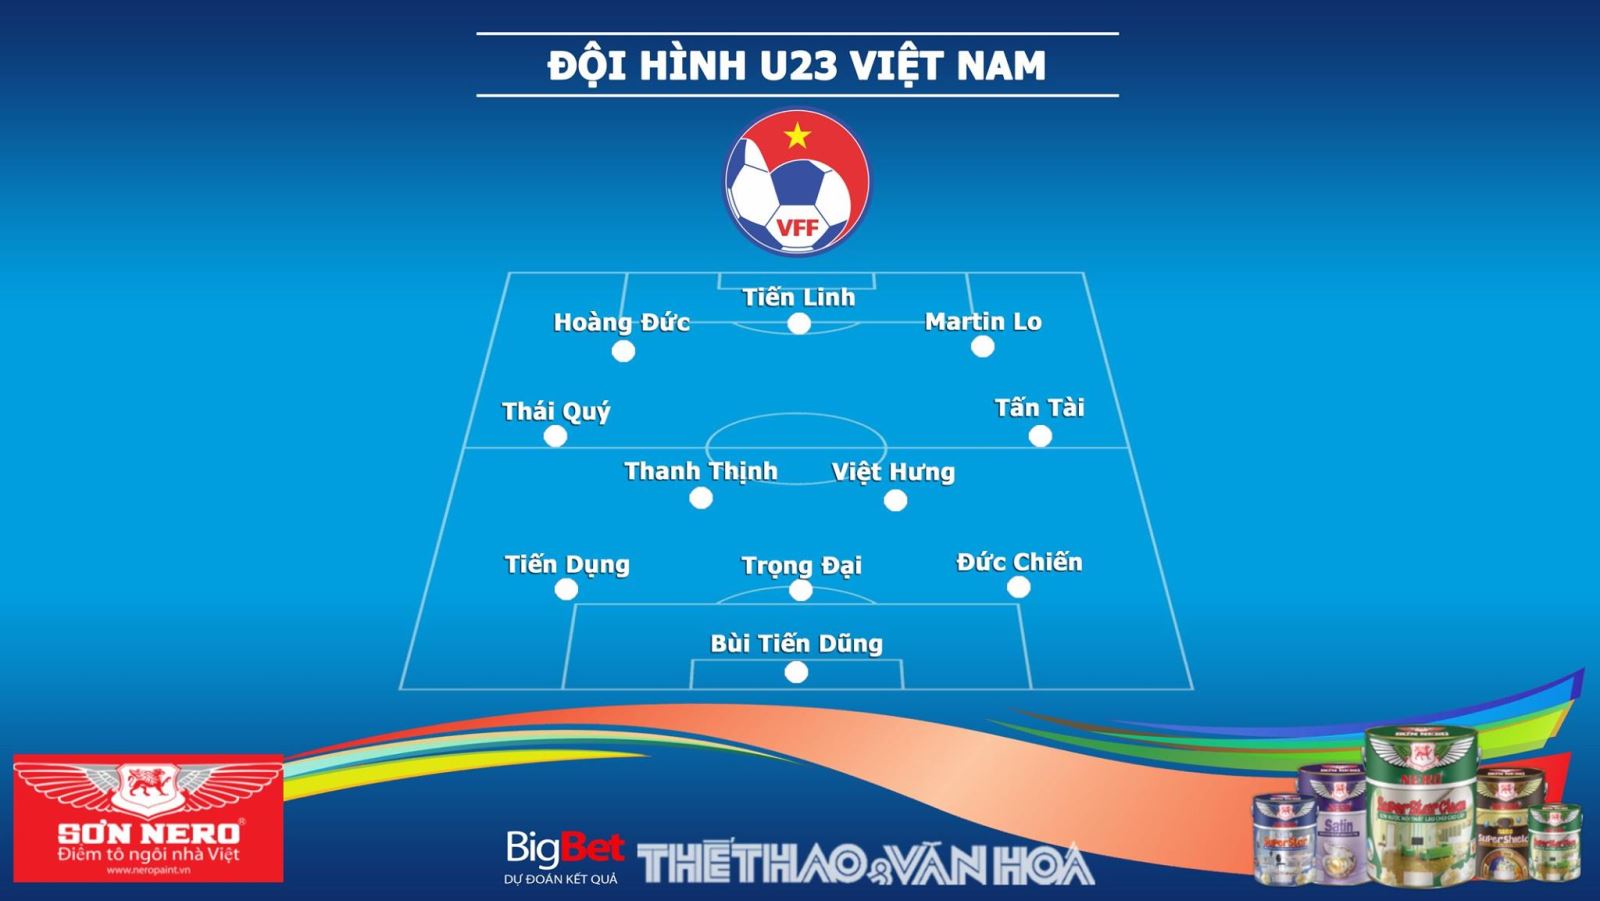 nhận định bóng đá U23 Việt Nam vs Myanmar, VTC1, VTC3, VTV6, VTV5, trực tiếp bóng đá, truc tiep bong da, xem bóng đá, dự đoán bóng đá, U23 Việt Nam đấu với Myanmar, U23 Việt Nam